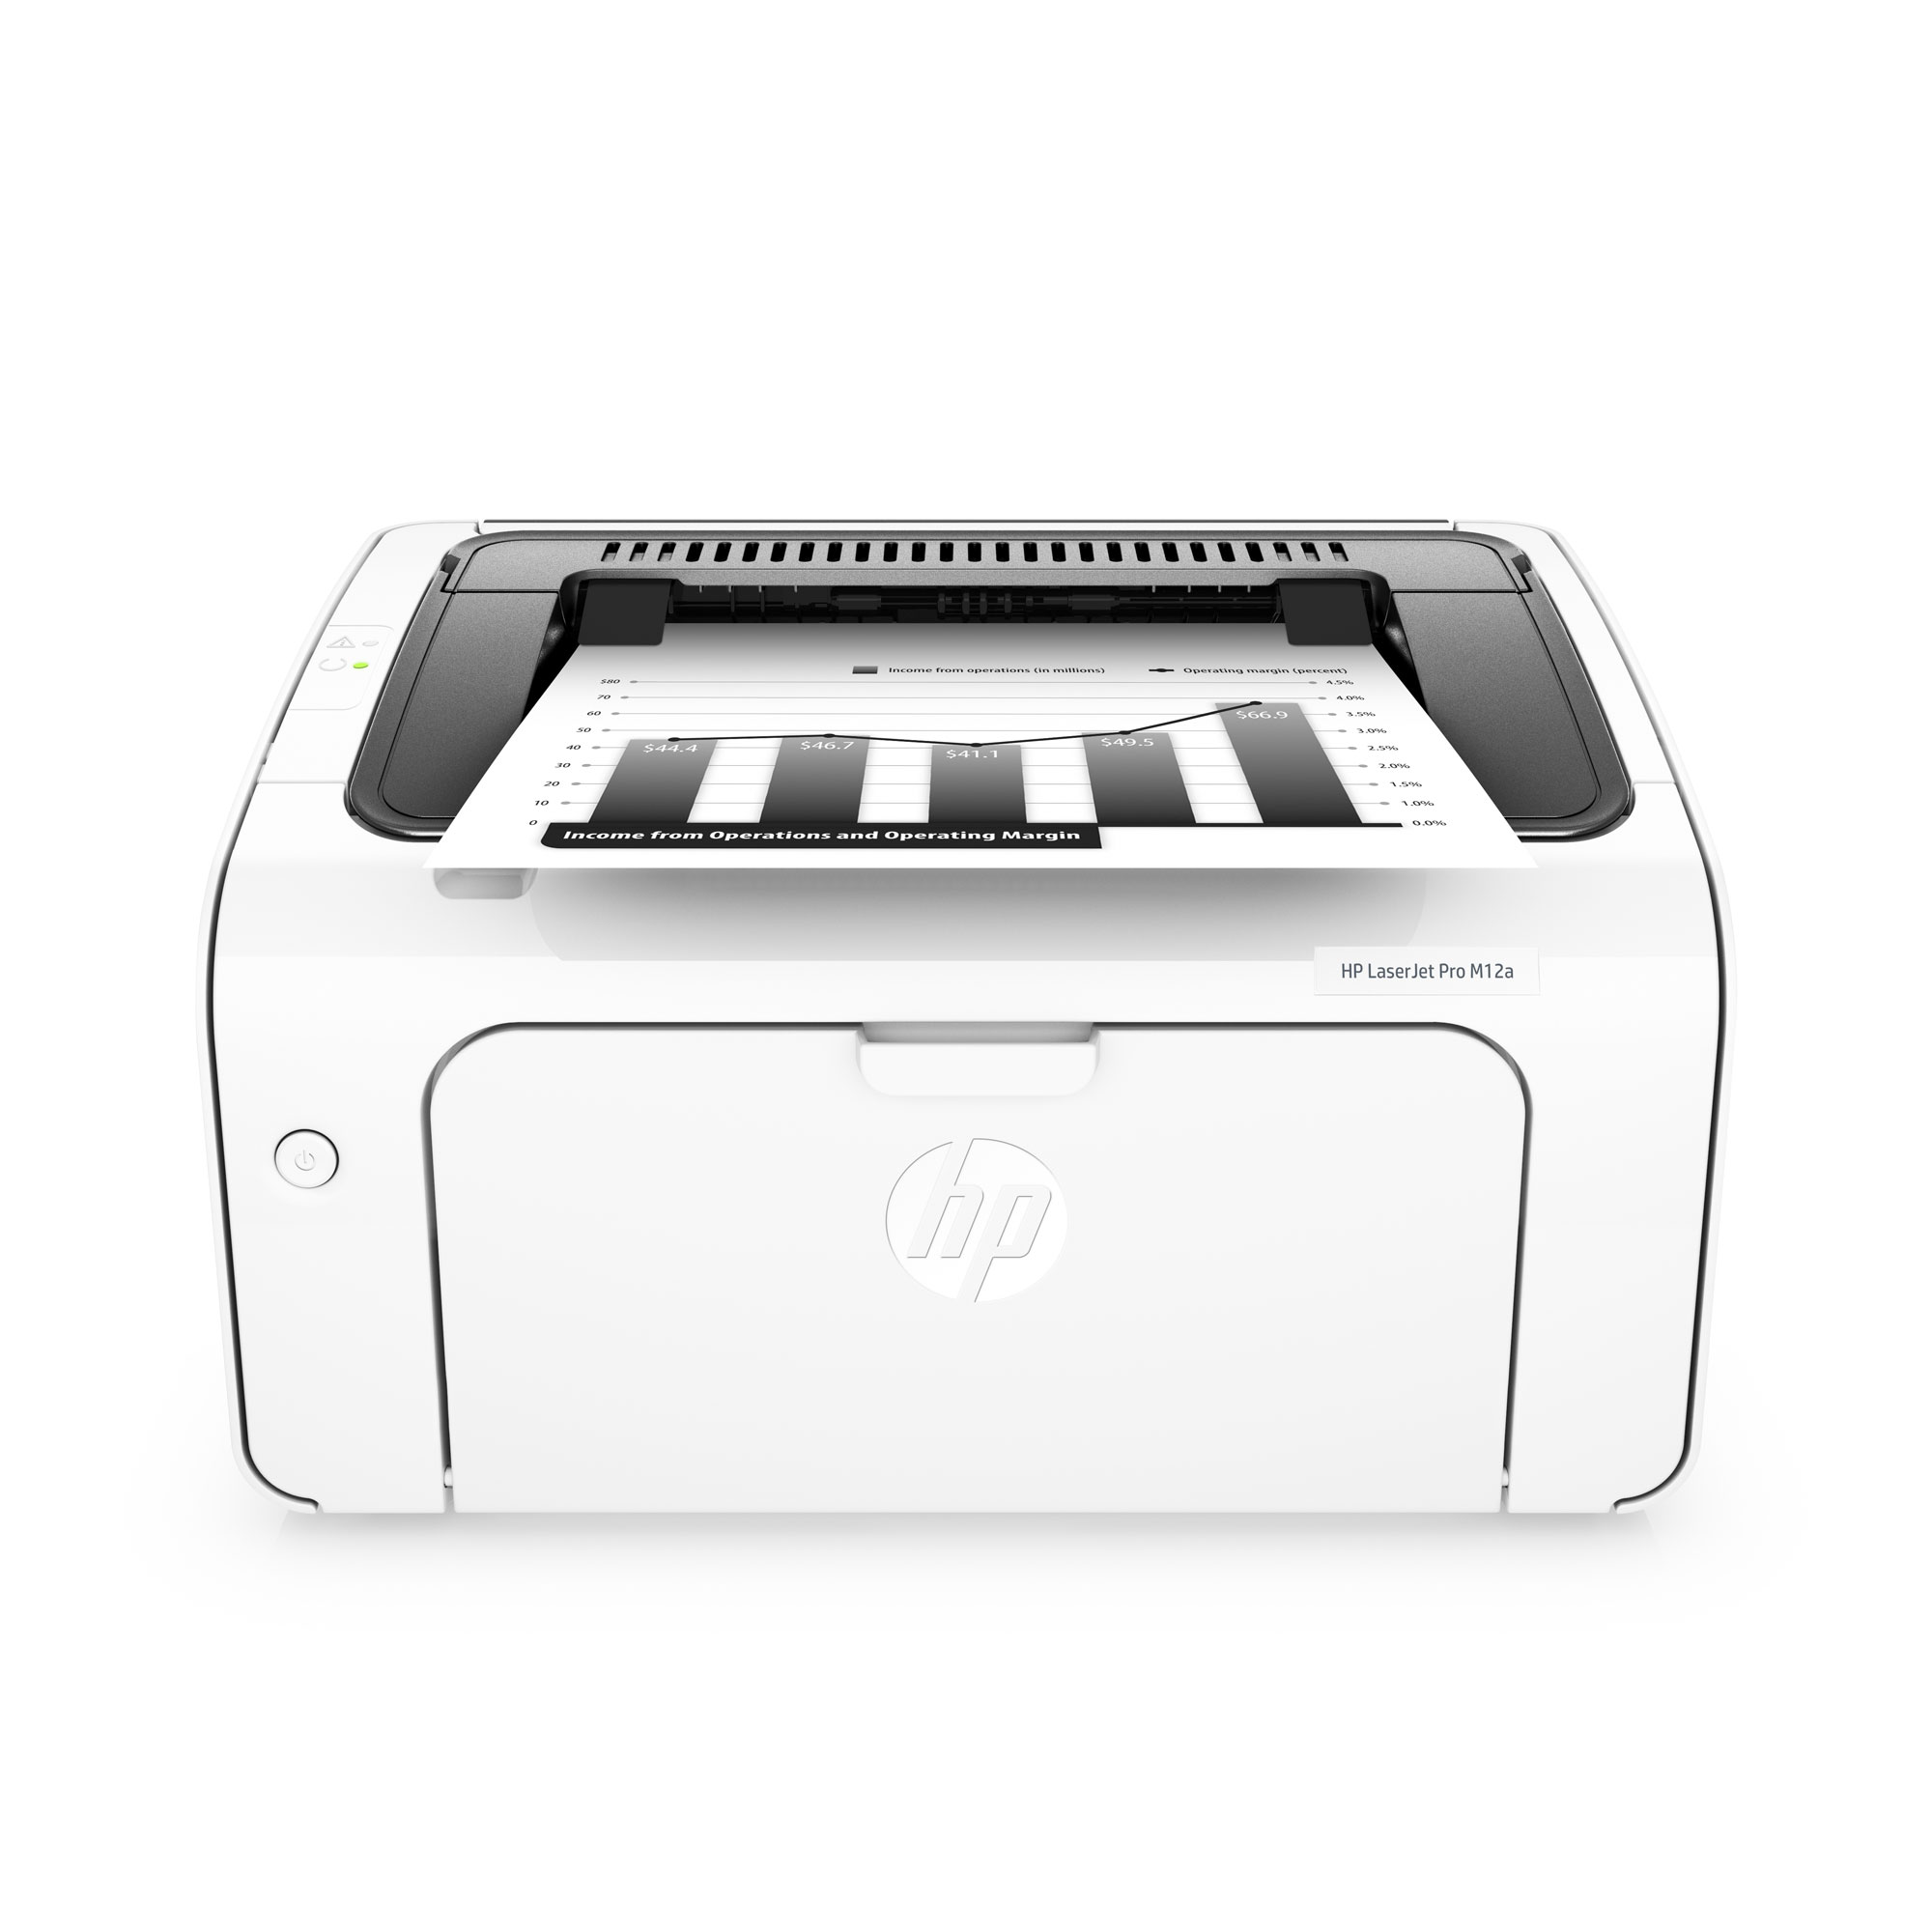 HP stampanti LaserJet Pro